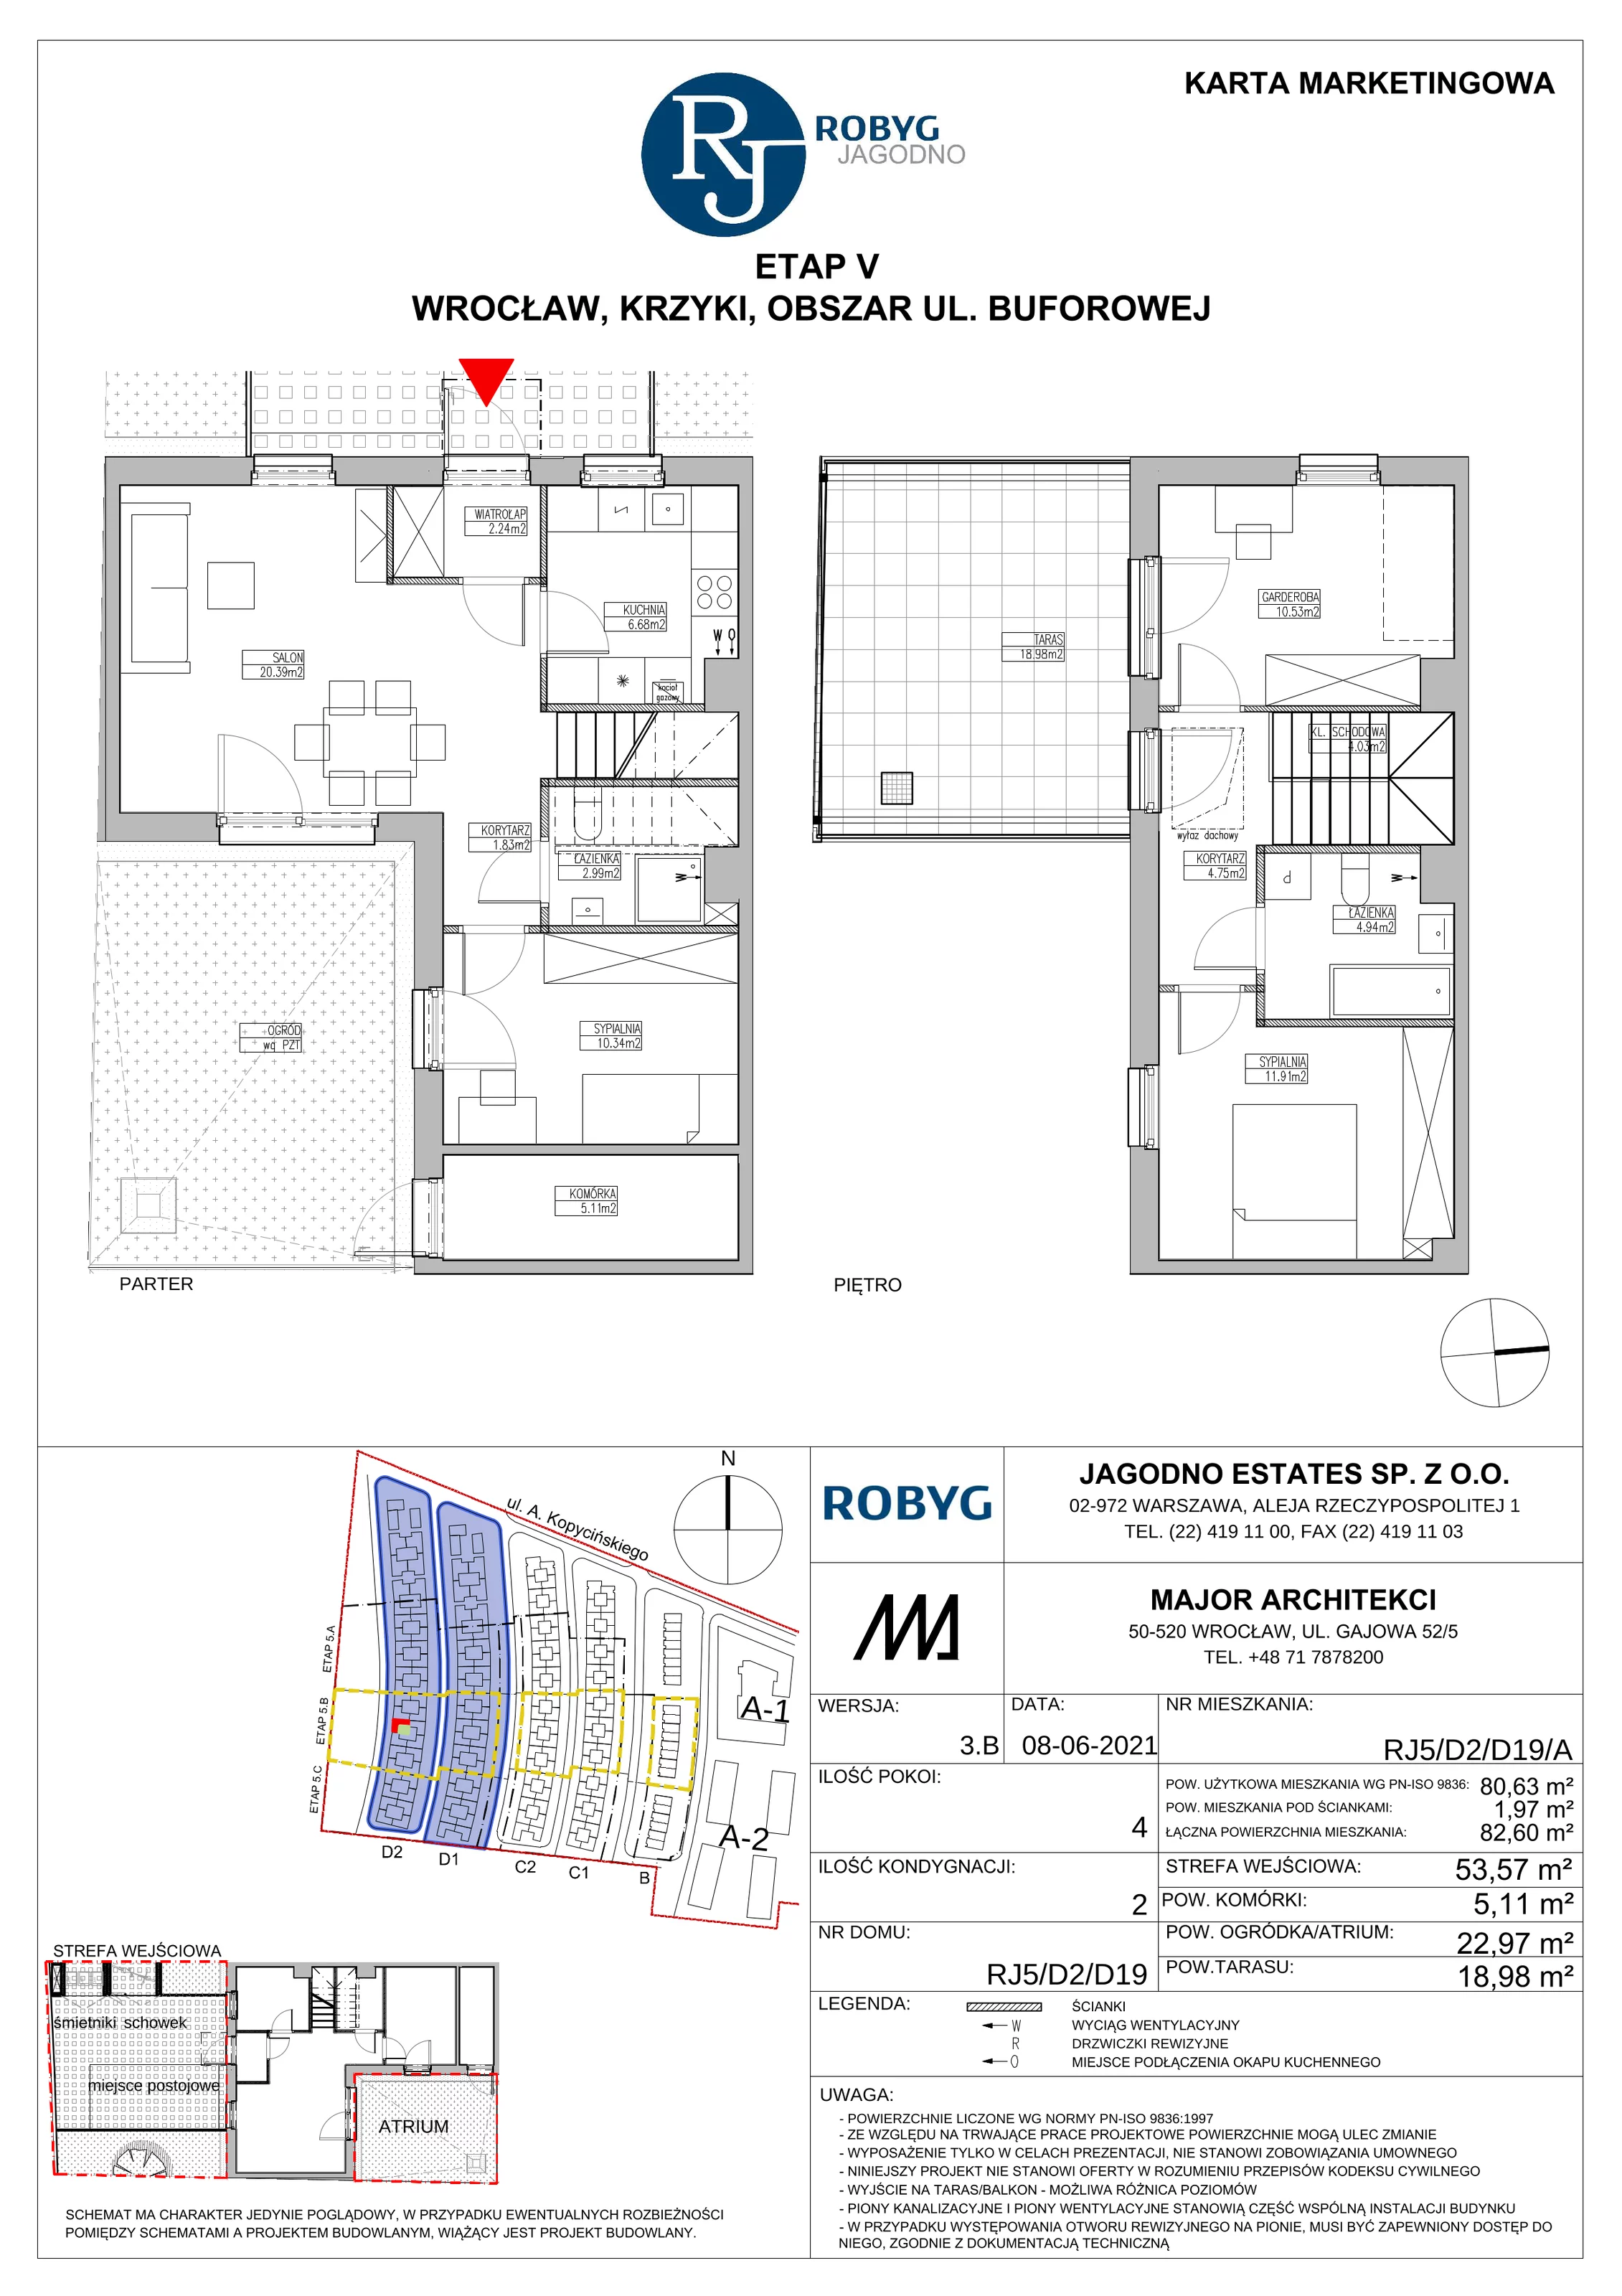 Dom 80,63 m², oferta nr RJ5/D2/D19/A, Robyg Jagodno, Wrocław, Jagodno, Krzyki, ul. Kopycińskiego